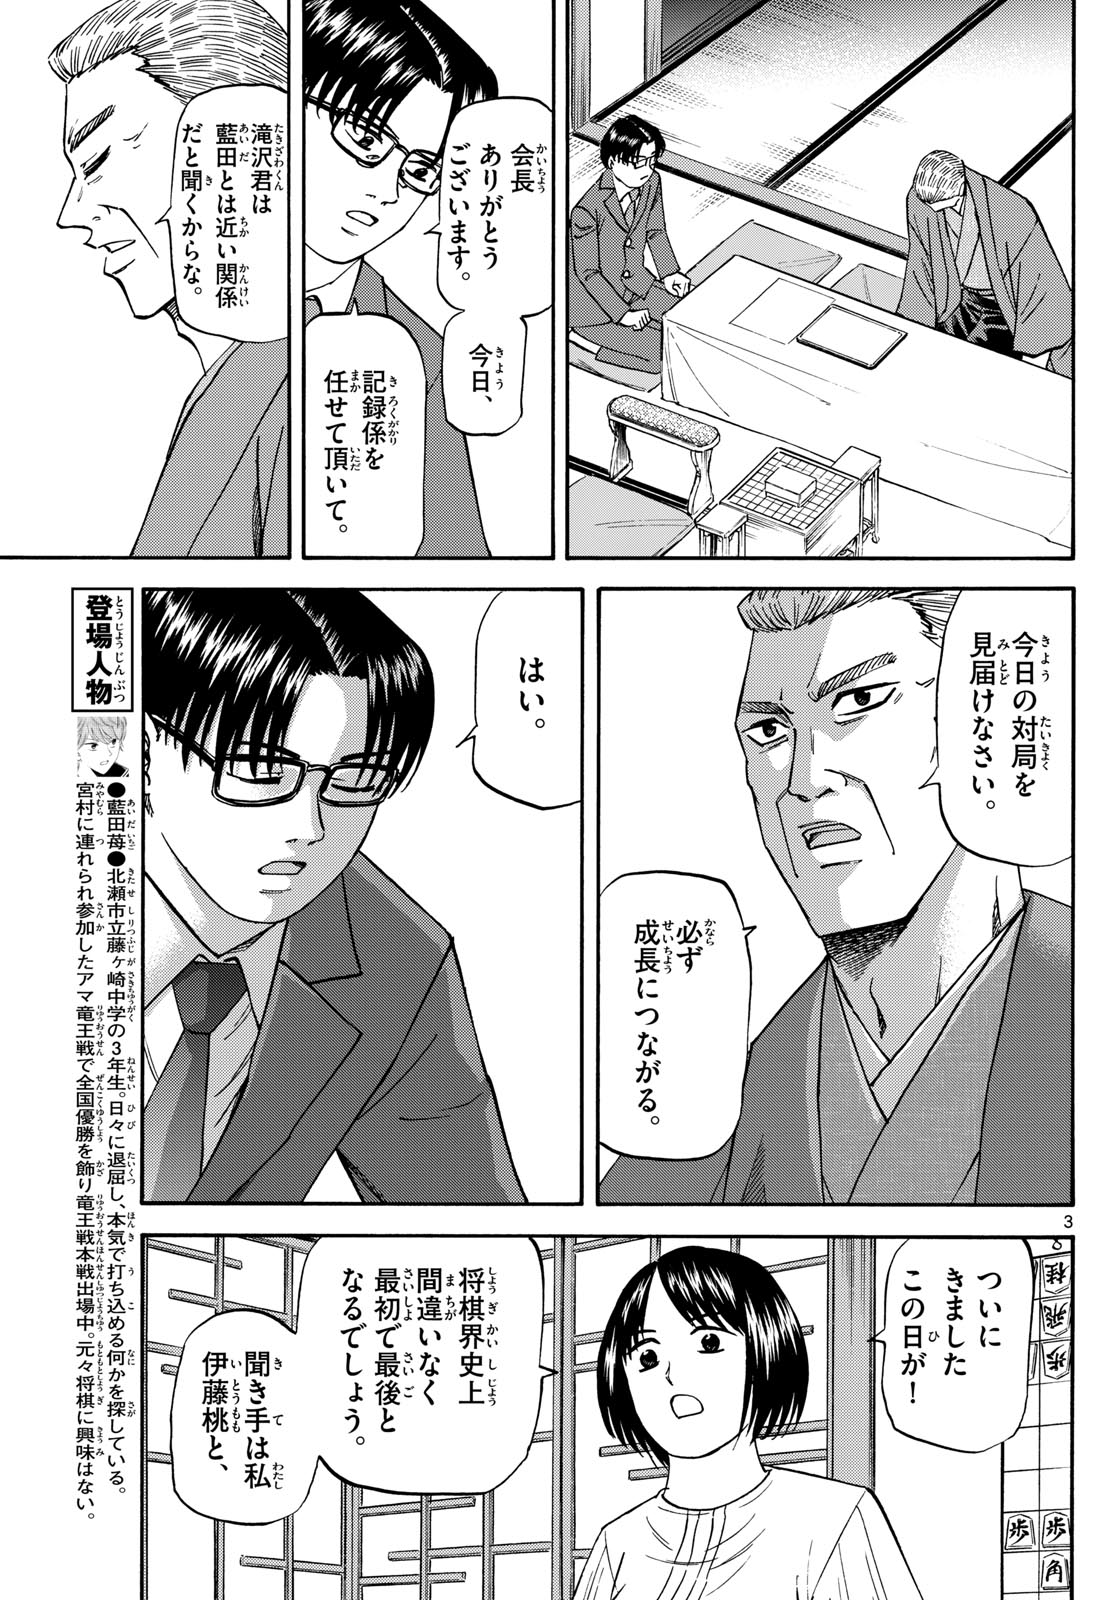 Tatsu to Ichigo - Chapter 175 - Page 3